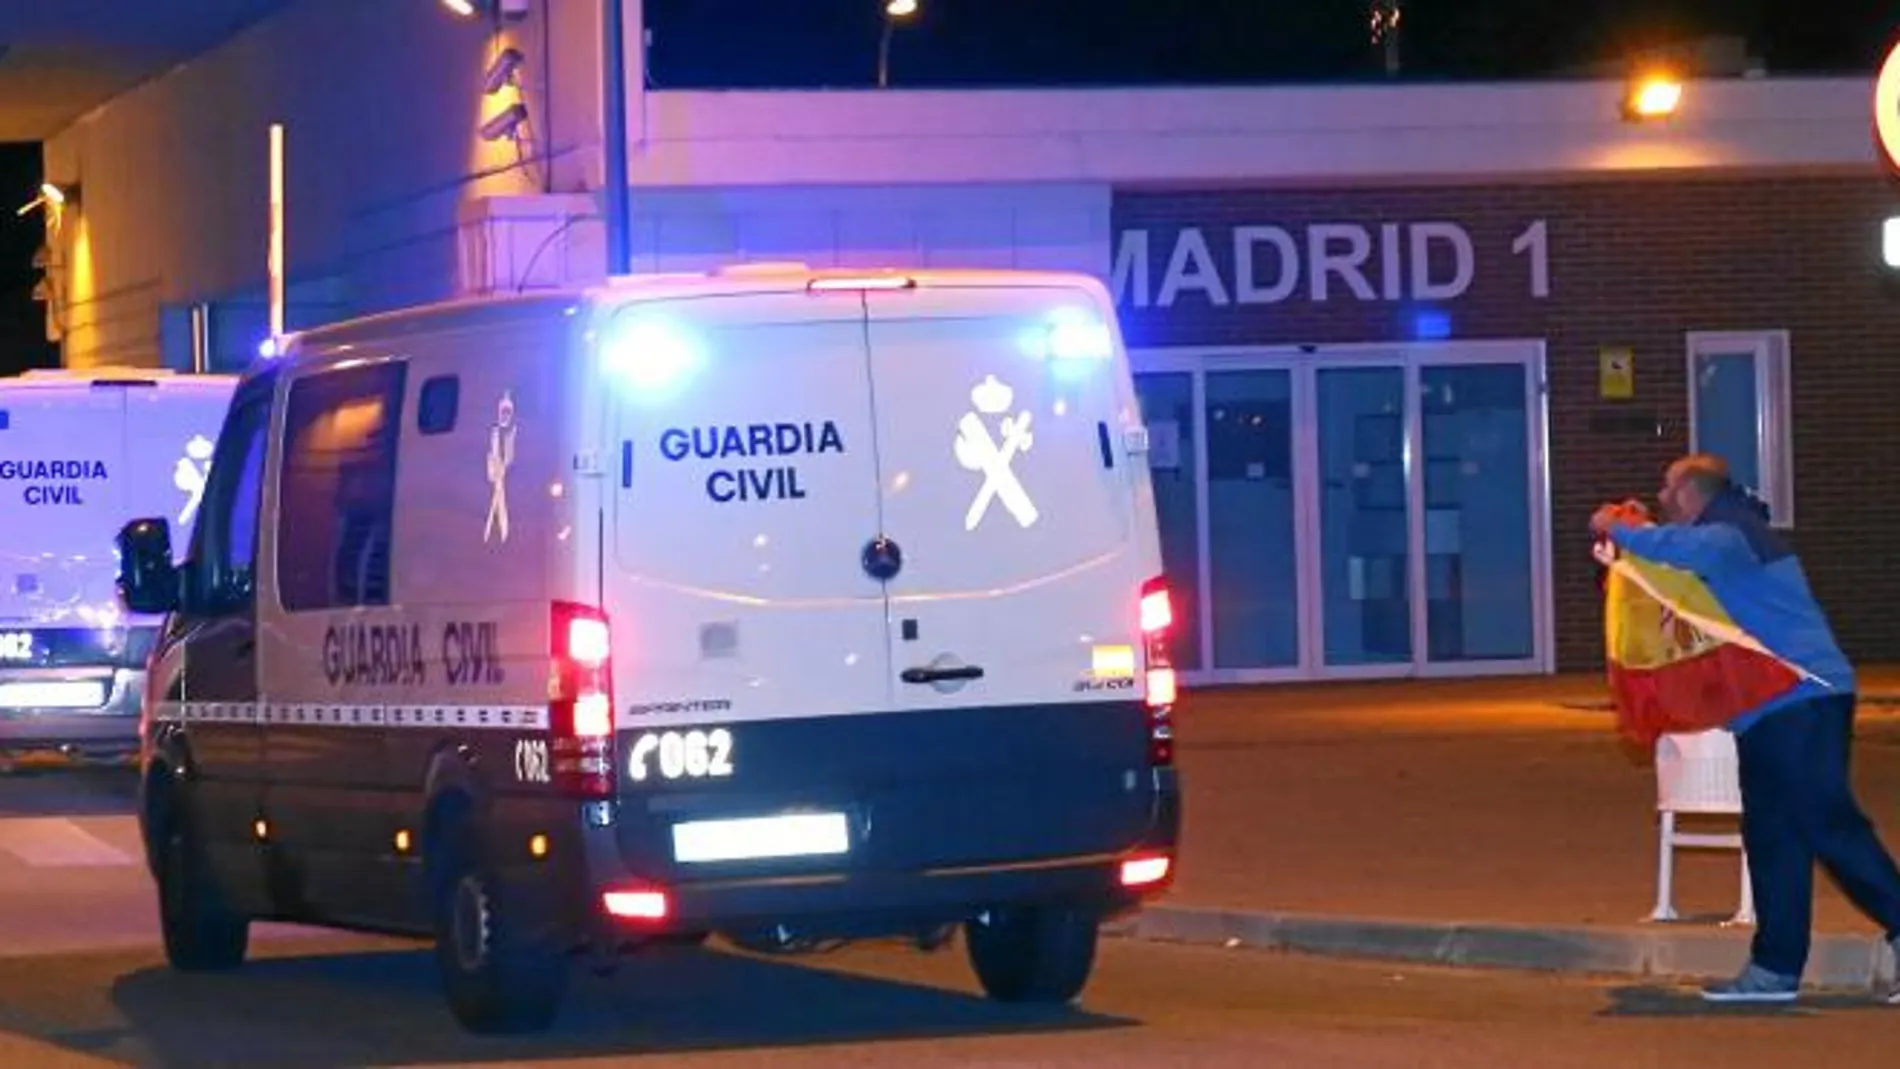 Furgones de la Guardia Civil trasladaron ayer a Junqueras y los ocho ex consellers del Govern desde la Audiencia Nacional, donde declararon, a las prisiones de Estremera y Alcalá Meco